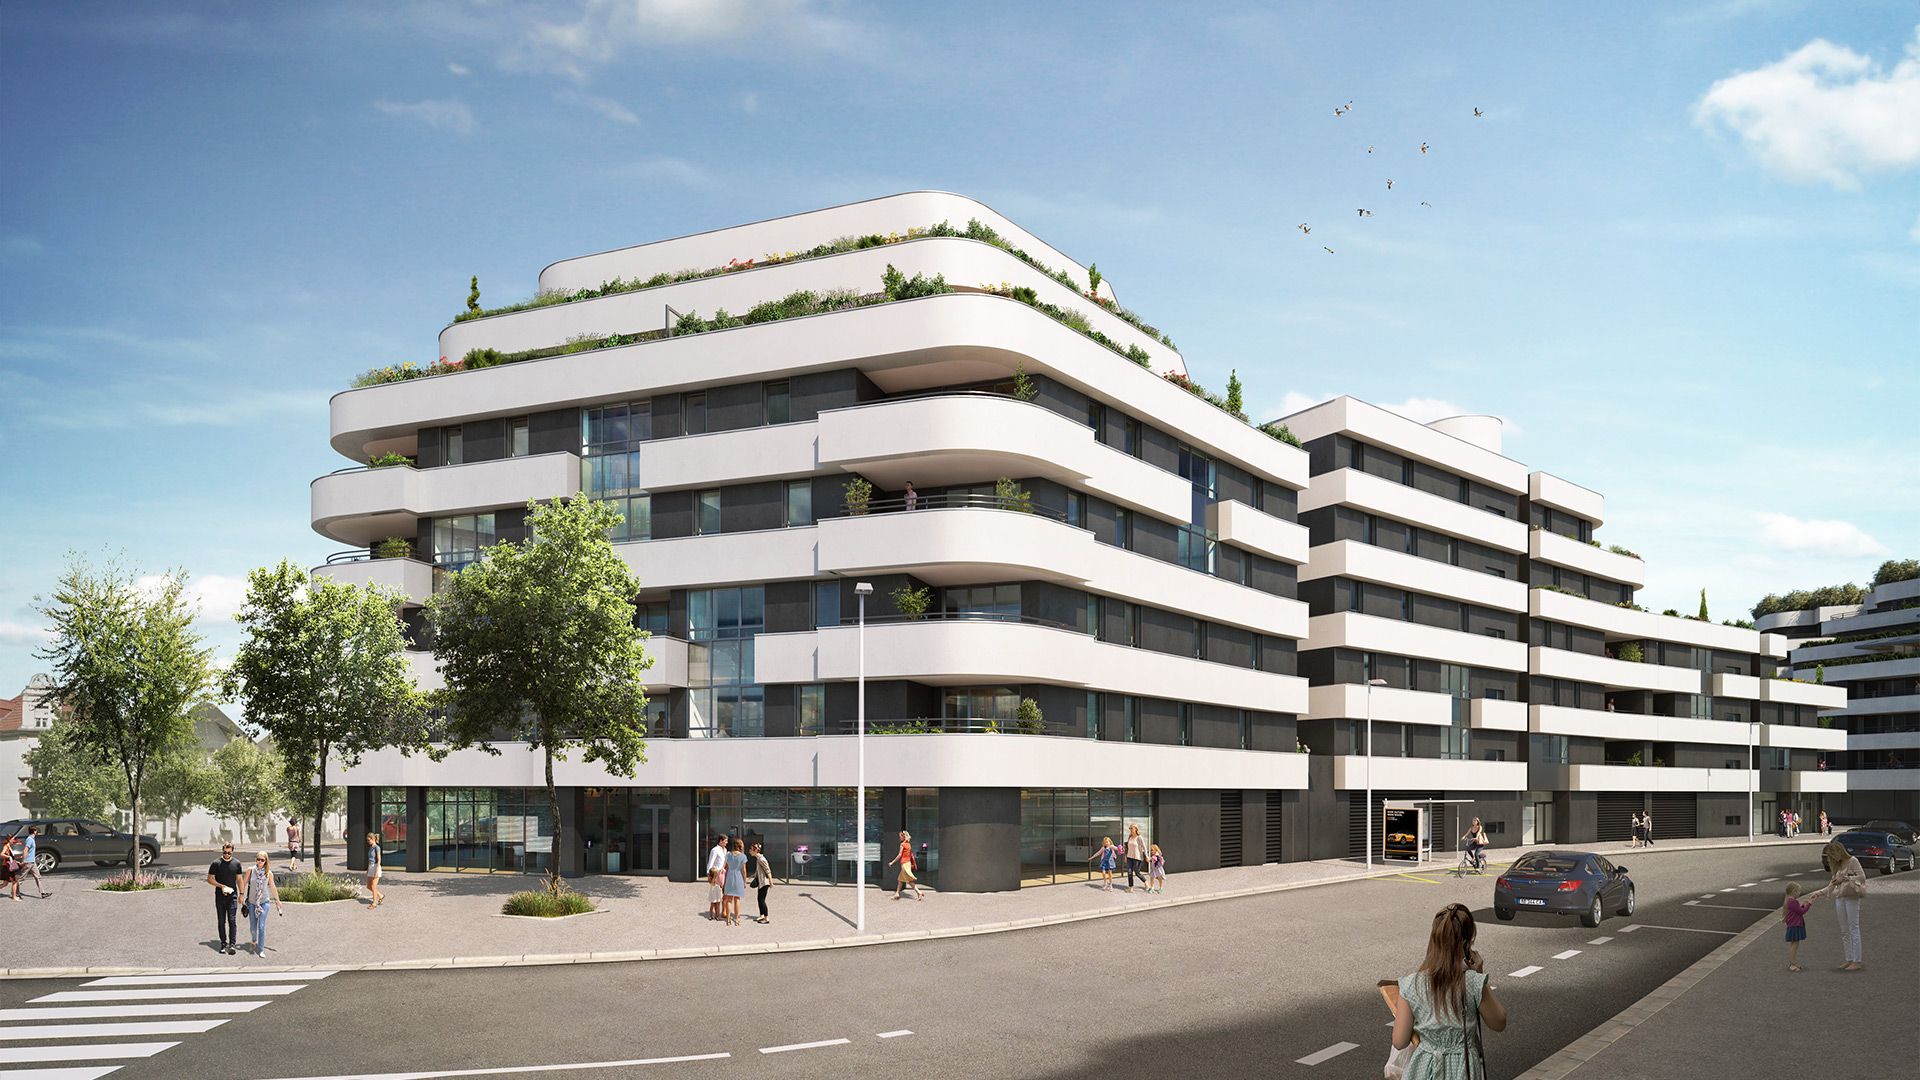 Concept Immobilier - Villa Marie-Louise - Appartements neufs à Thionville - Vue extérieure